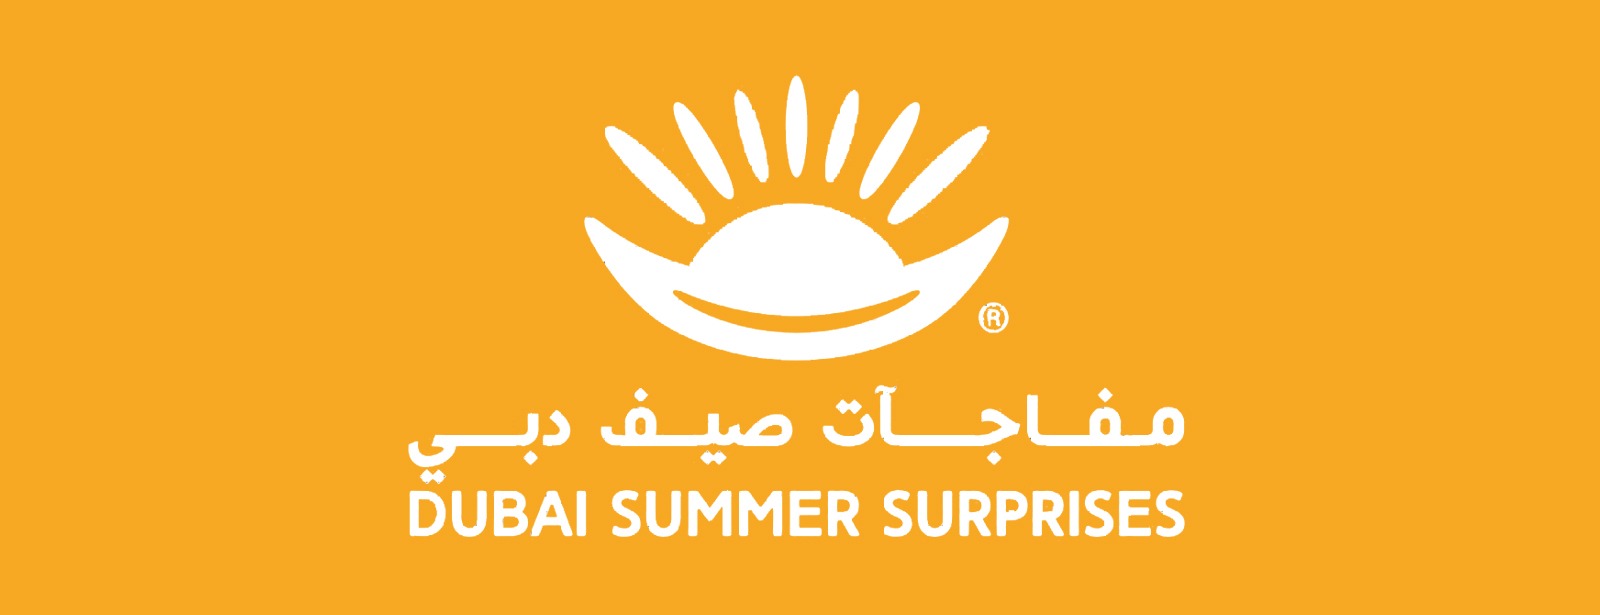 Dubai Summer Surprises 2021 - Coming Soon in UAE